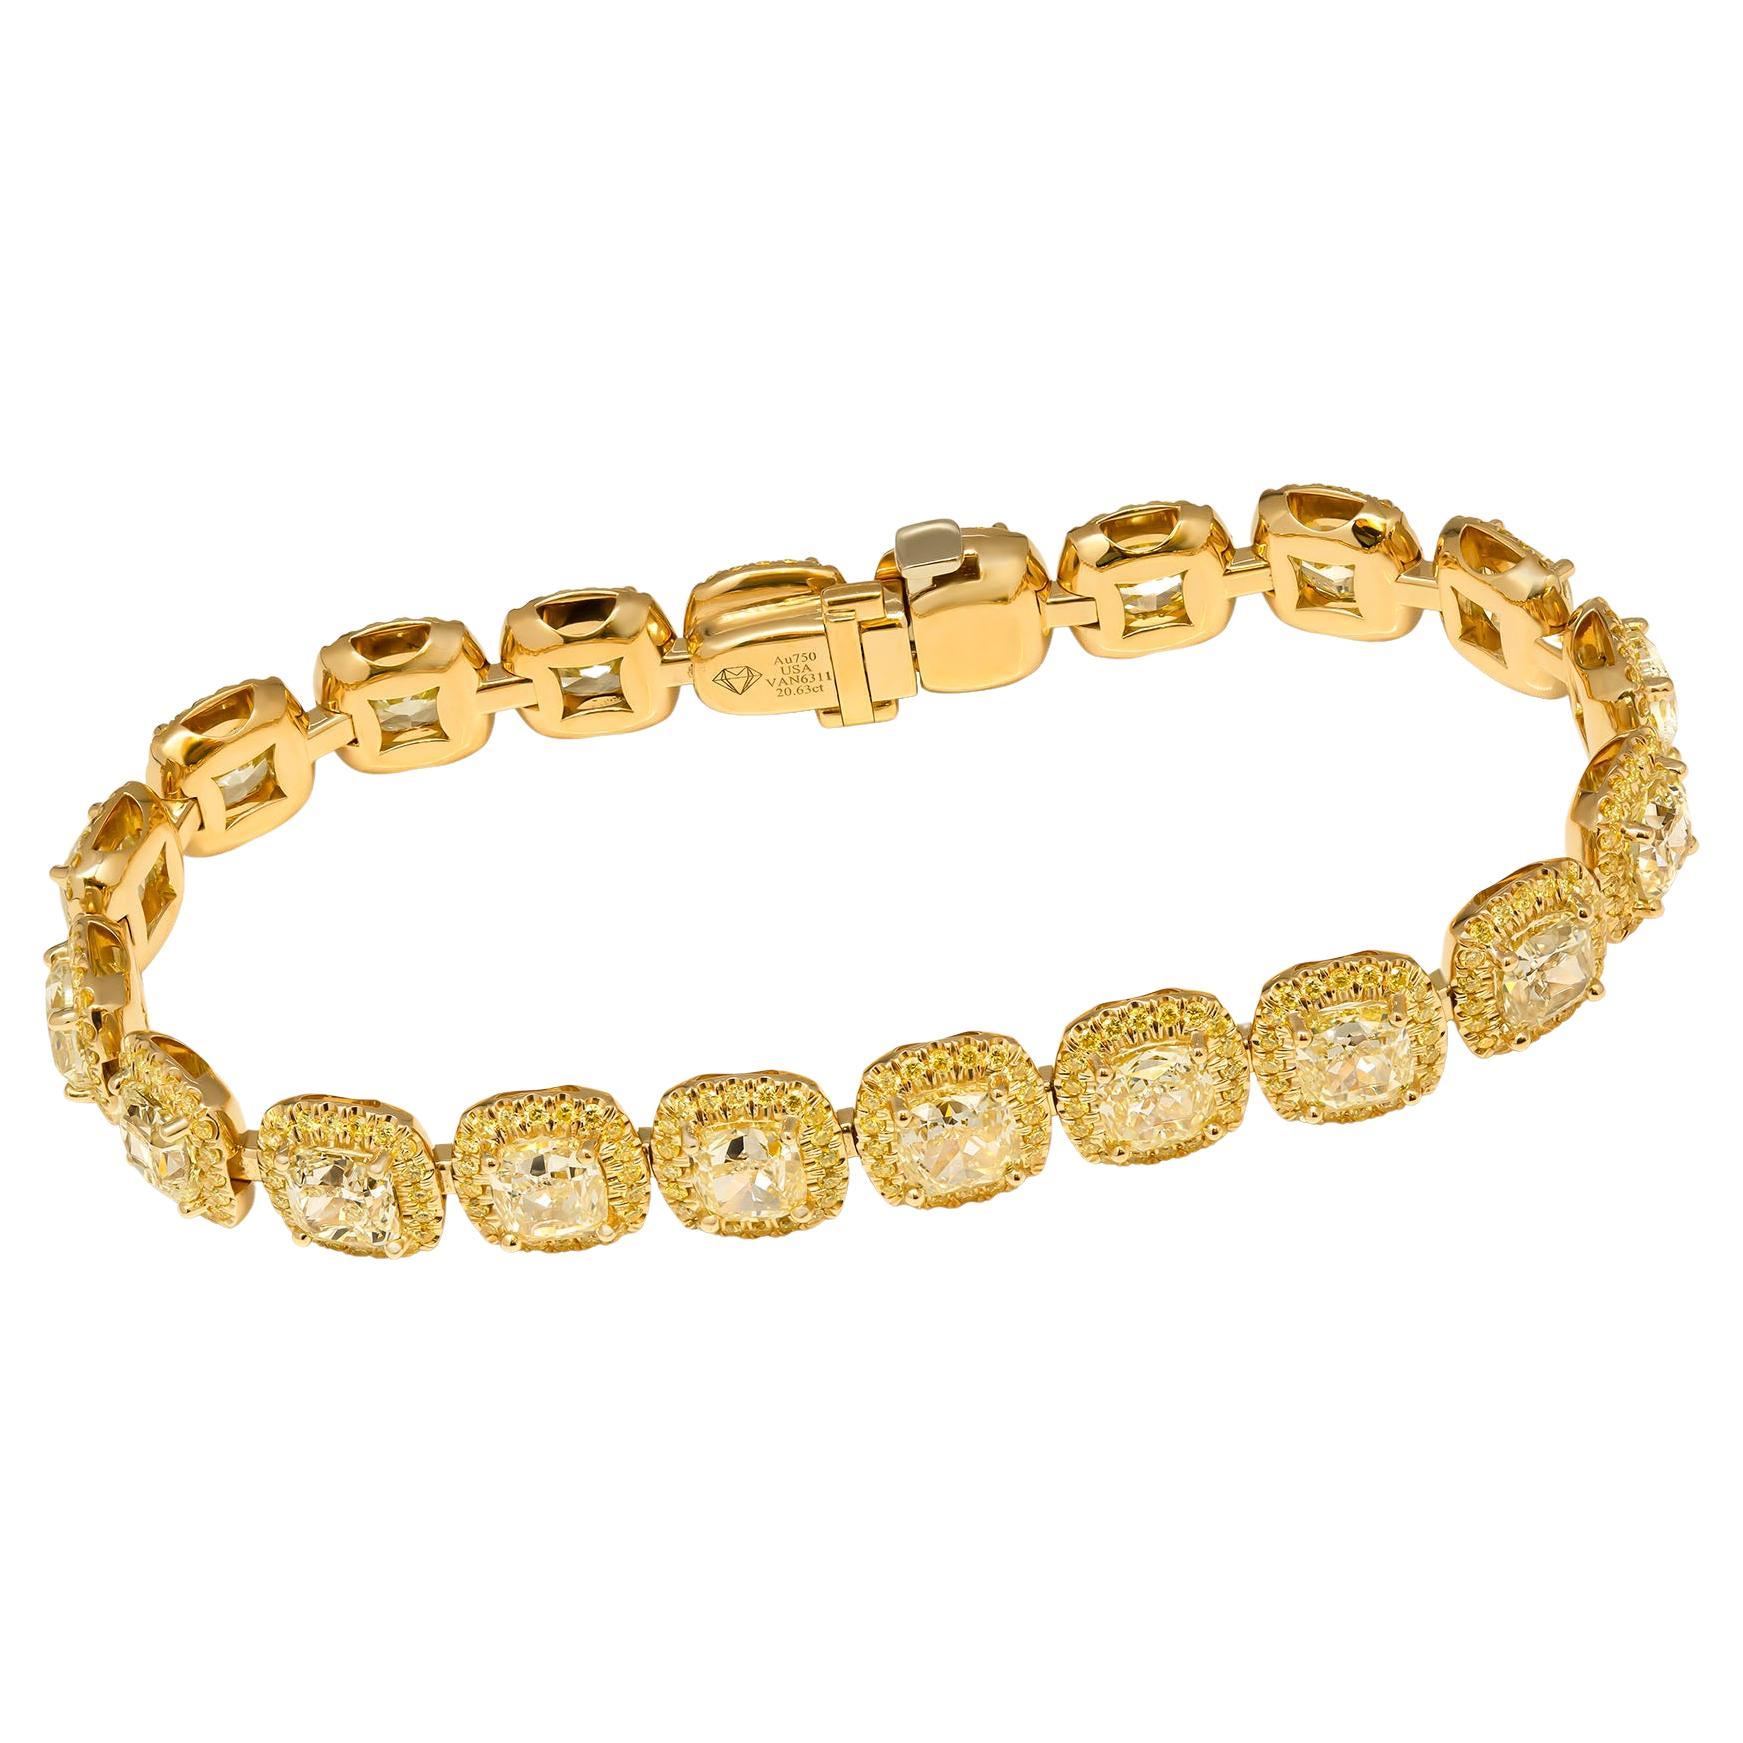 Bracelet fantaisie haut de gamme !
Ce luxueux bracelet en or jaune 18 carats est orné de 20 grands diamants jaunes taillés en coussin, chaque diamant ayant une taille moyenne de 1,00+ct (poids combiné de 20,63 carats).
Délicate auréole autour 